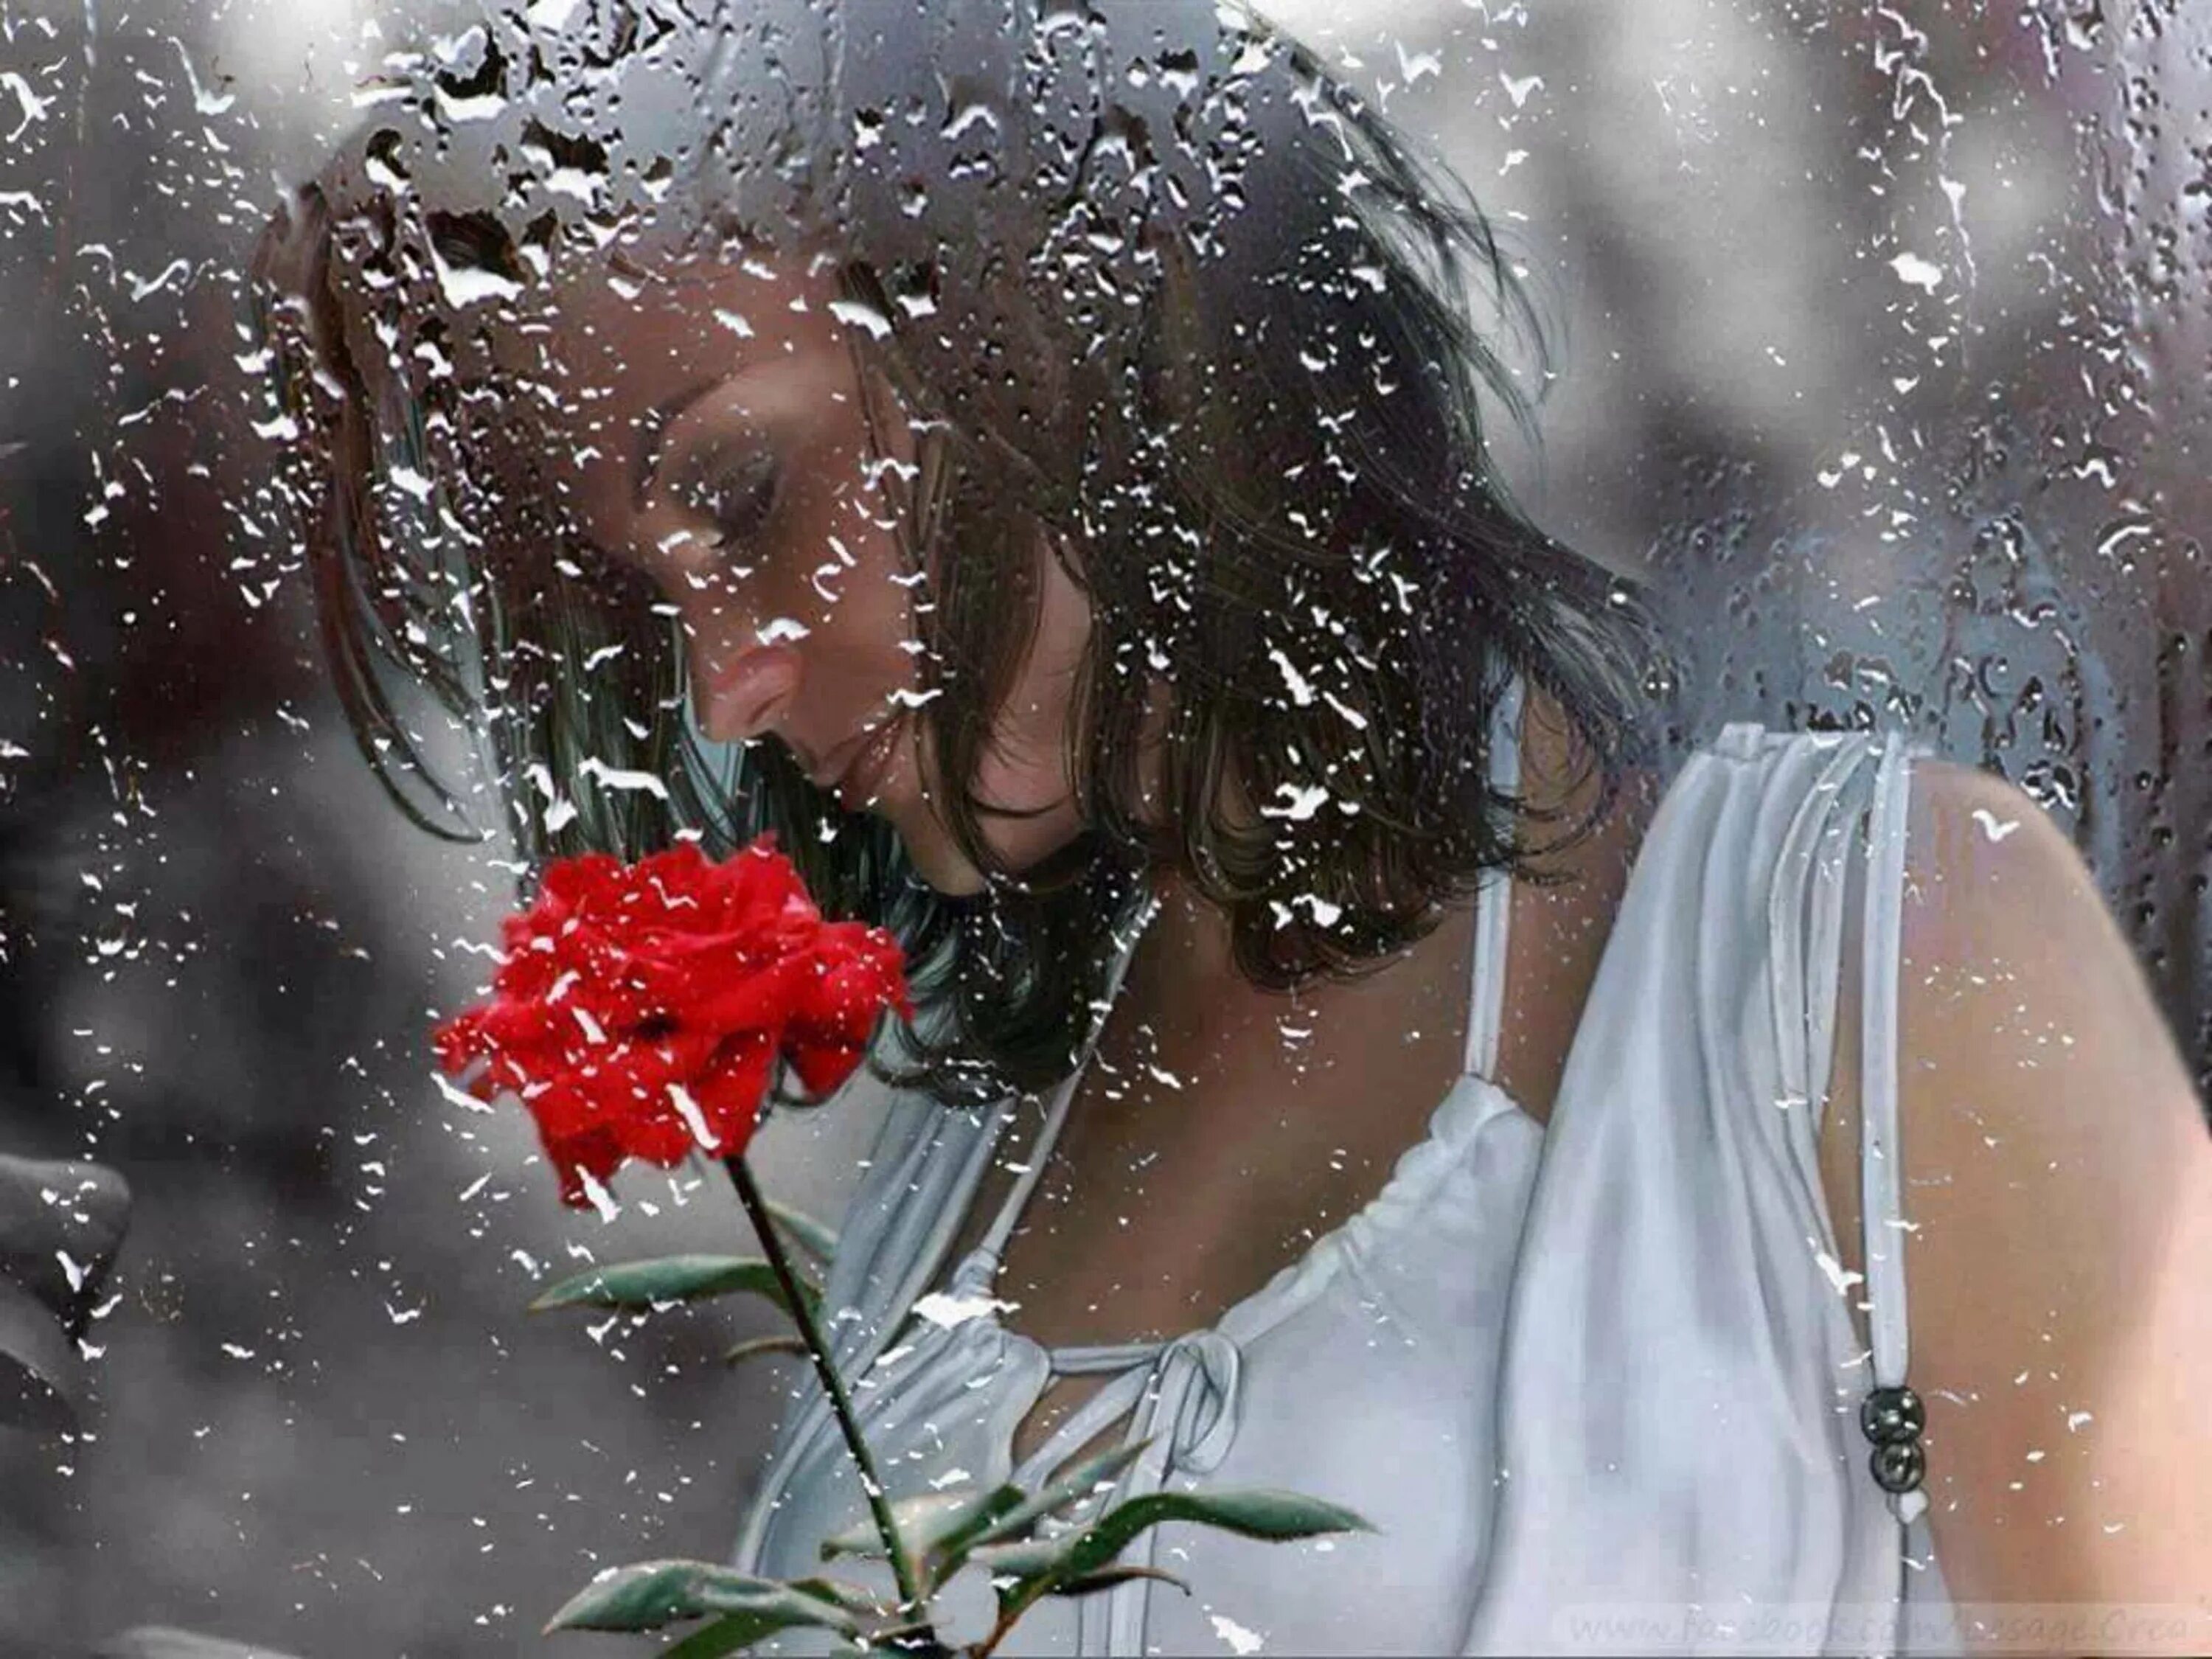 Ветер заиграл в волосах песня. Женщина дождя. Цветы на дождливом окне. Слезы души. Девушка за мокрым стеклом.